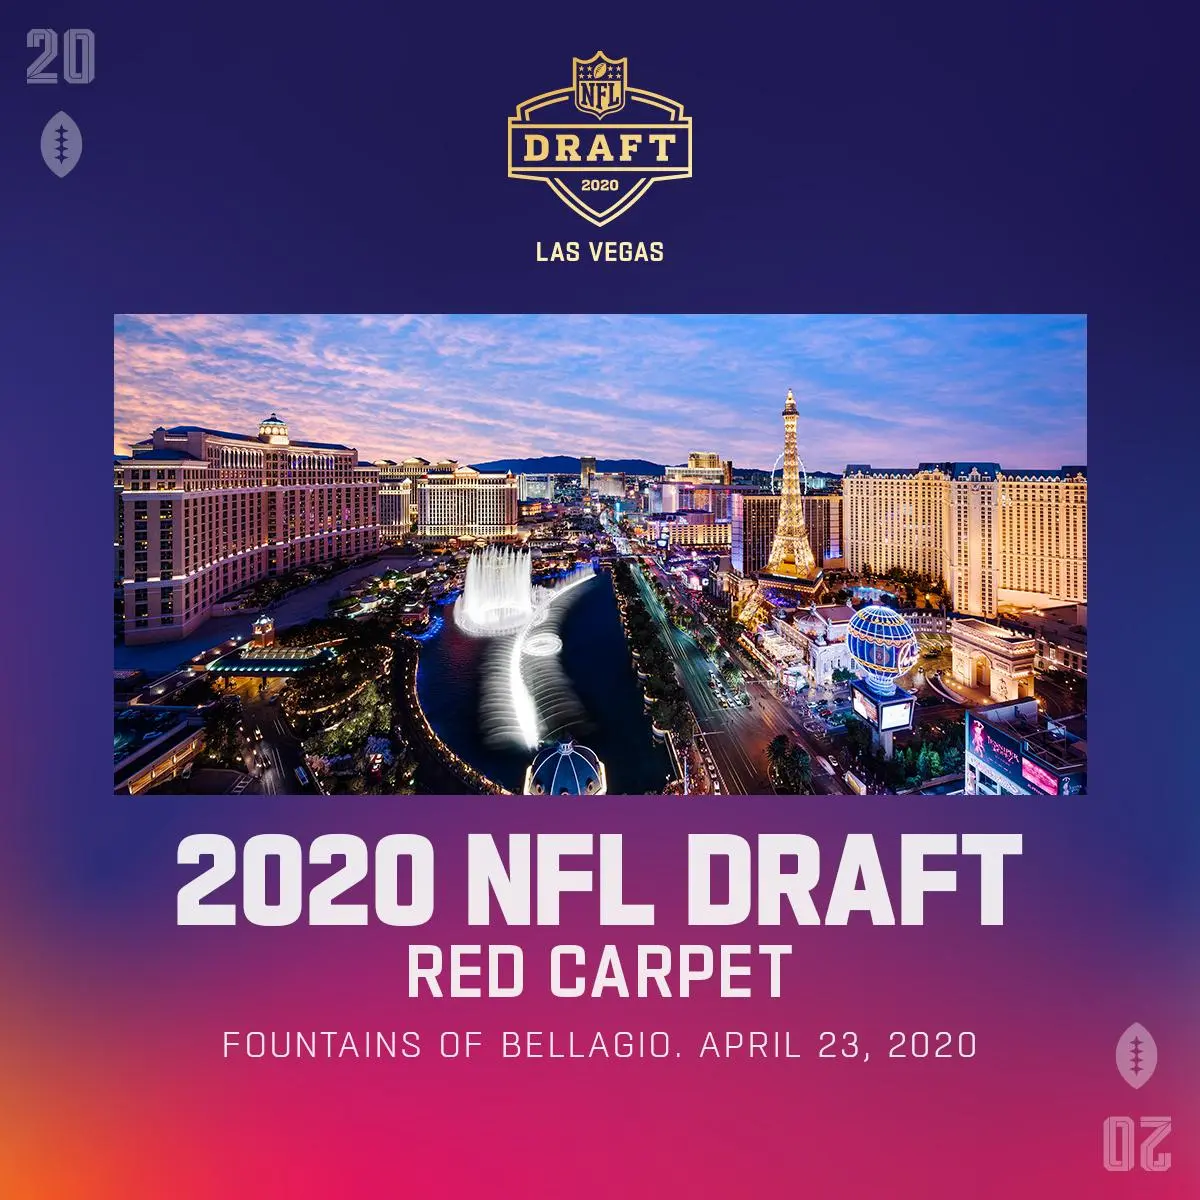 Tapete vermelho do Draft da NFL de 2020 será nas fontes do Bellagio em Las Vegas